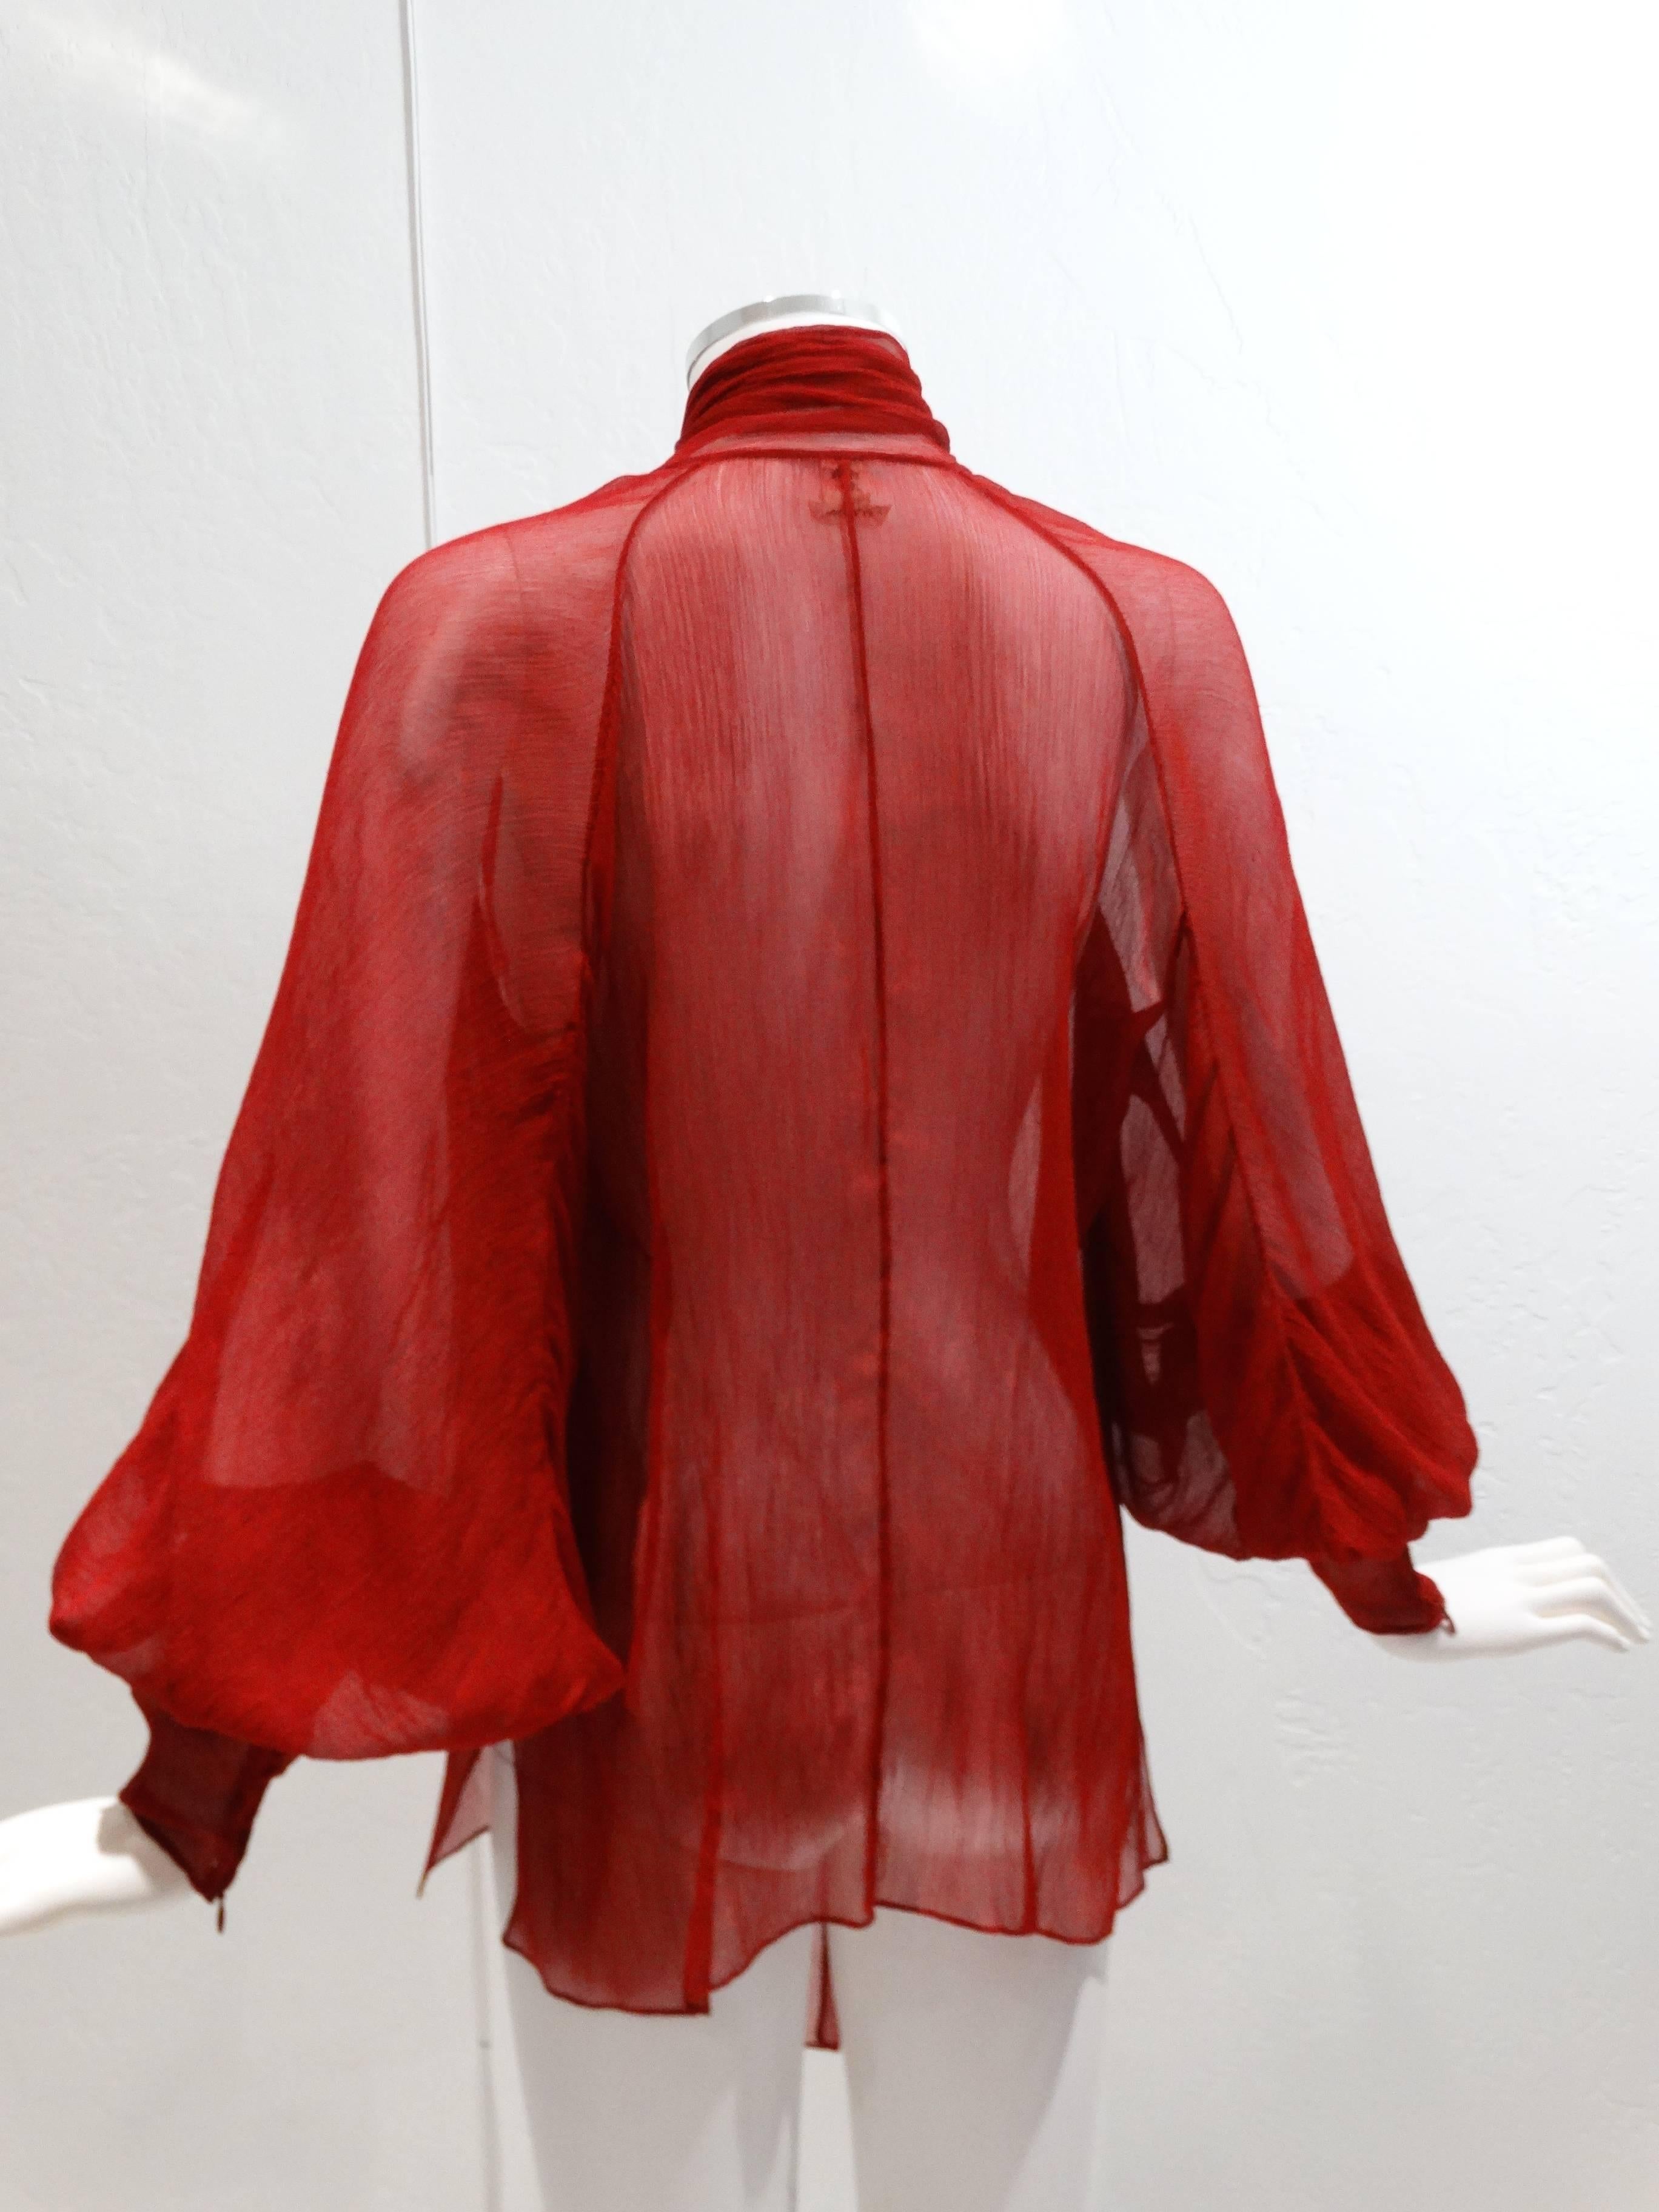 2007 Hermes Silk Blouse designed by Jean Paul Gaultier 4